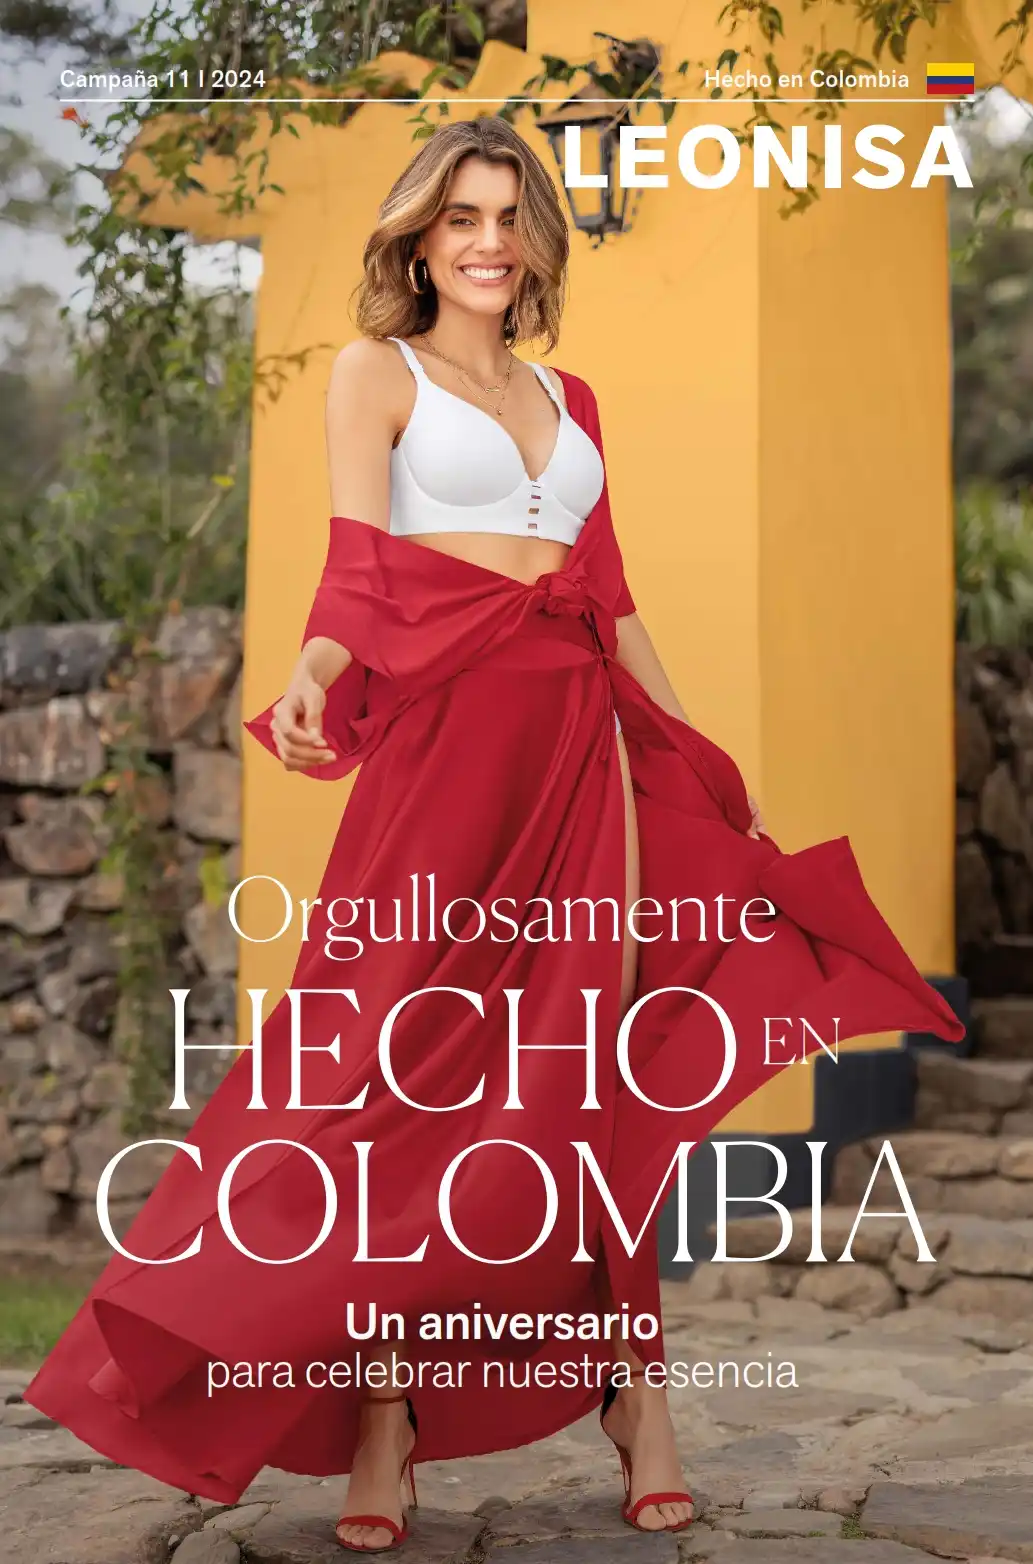 Catálogo Leonisa Campaña 11 Colombia 2024